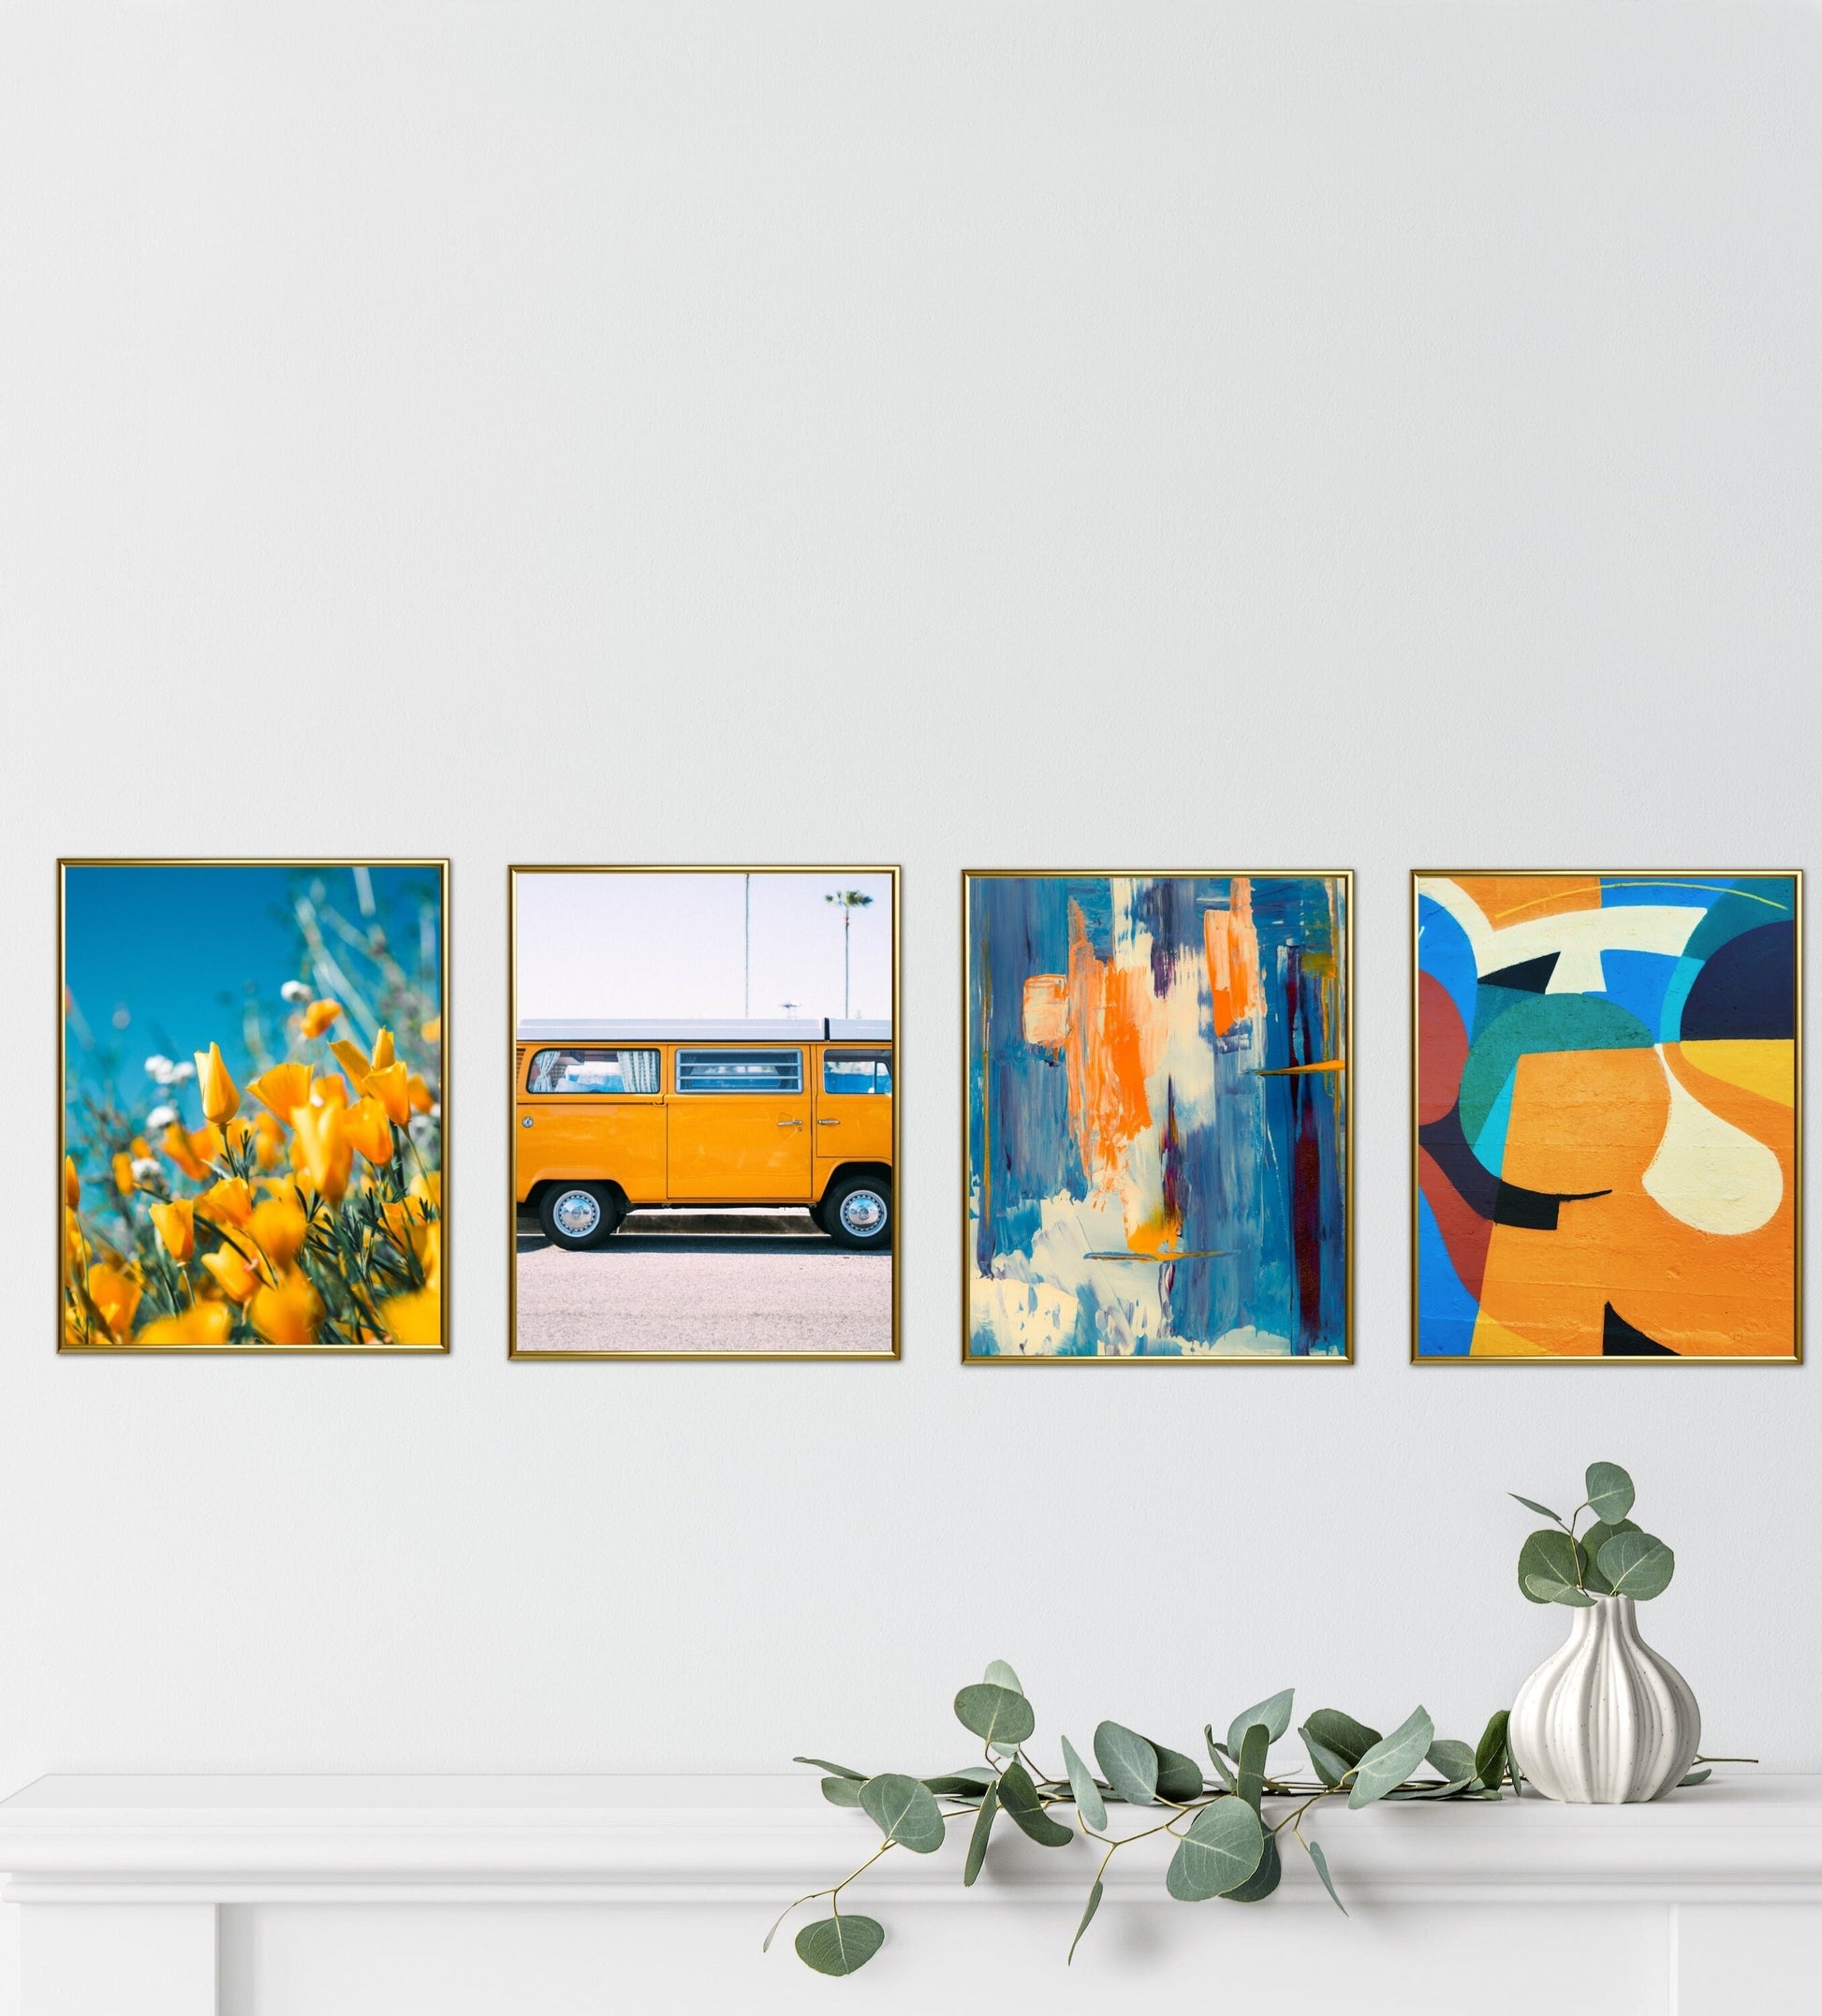 Retro prints set of 4 DIGITAL PRINTS, hippie wall décor, flower power décor, colorful boho décor, set of 4 prints colorful, hippie wall art